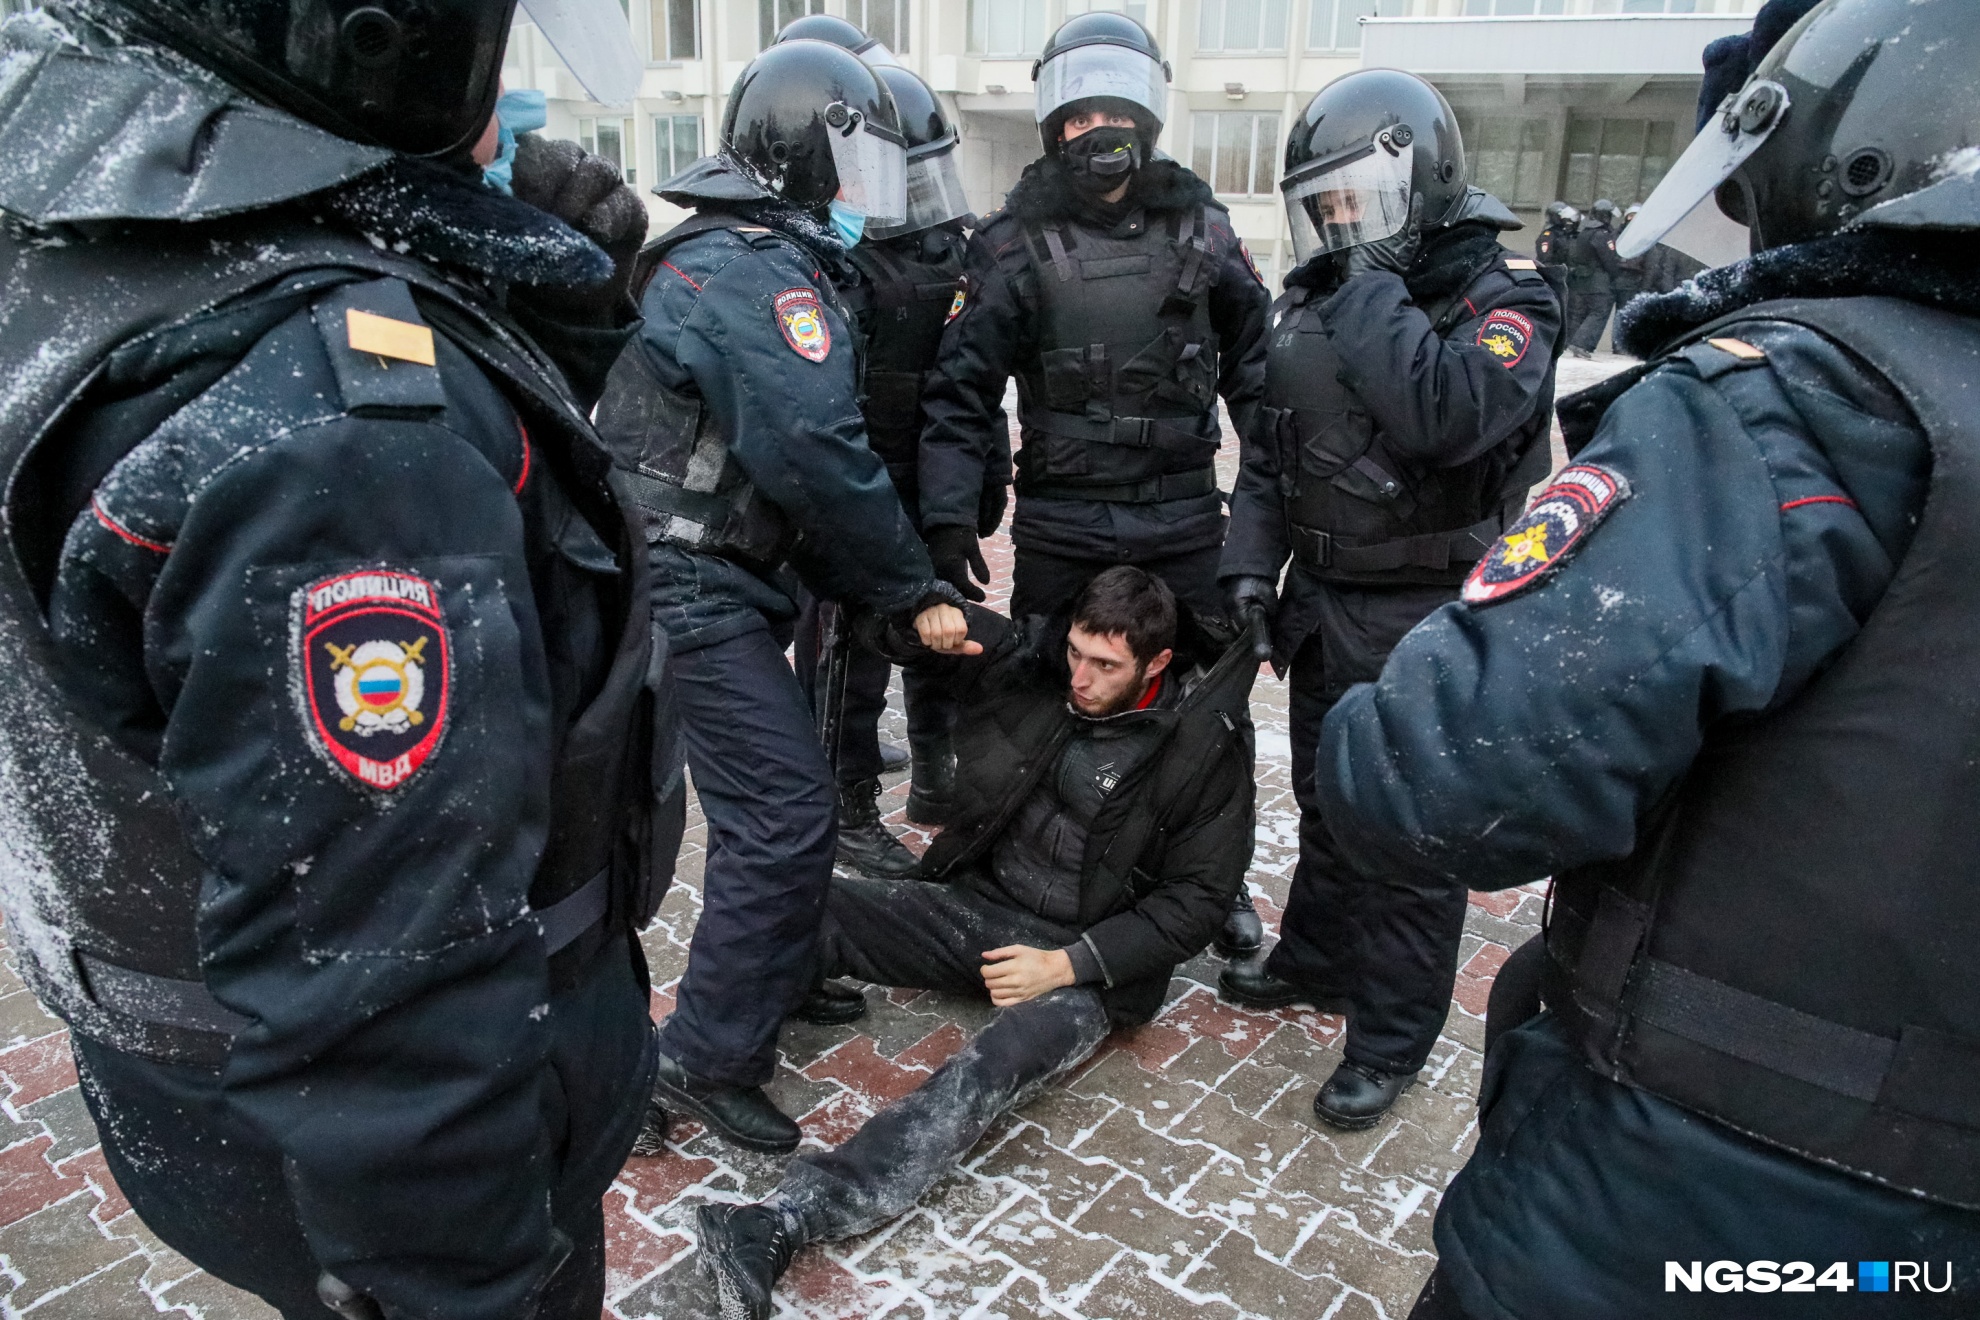 Участник митинга в Красноярске нанес полицейскому травмы головы, кинув бутылку газировки